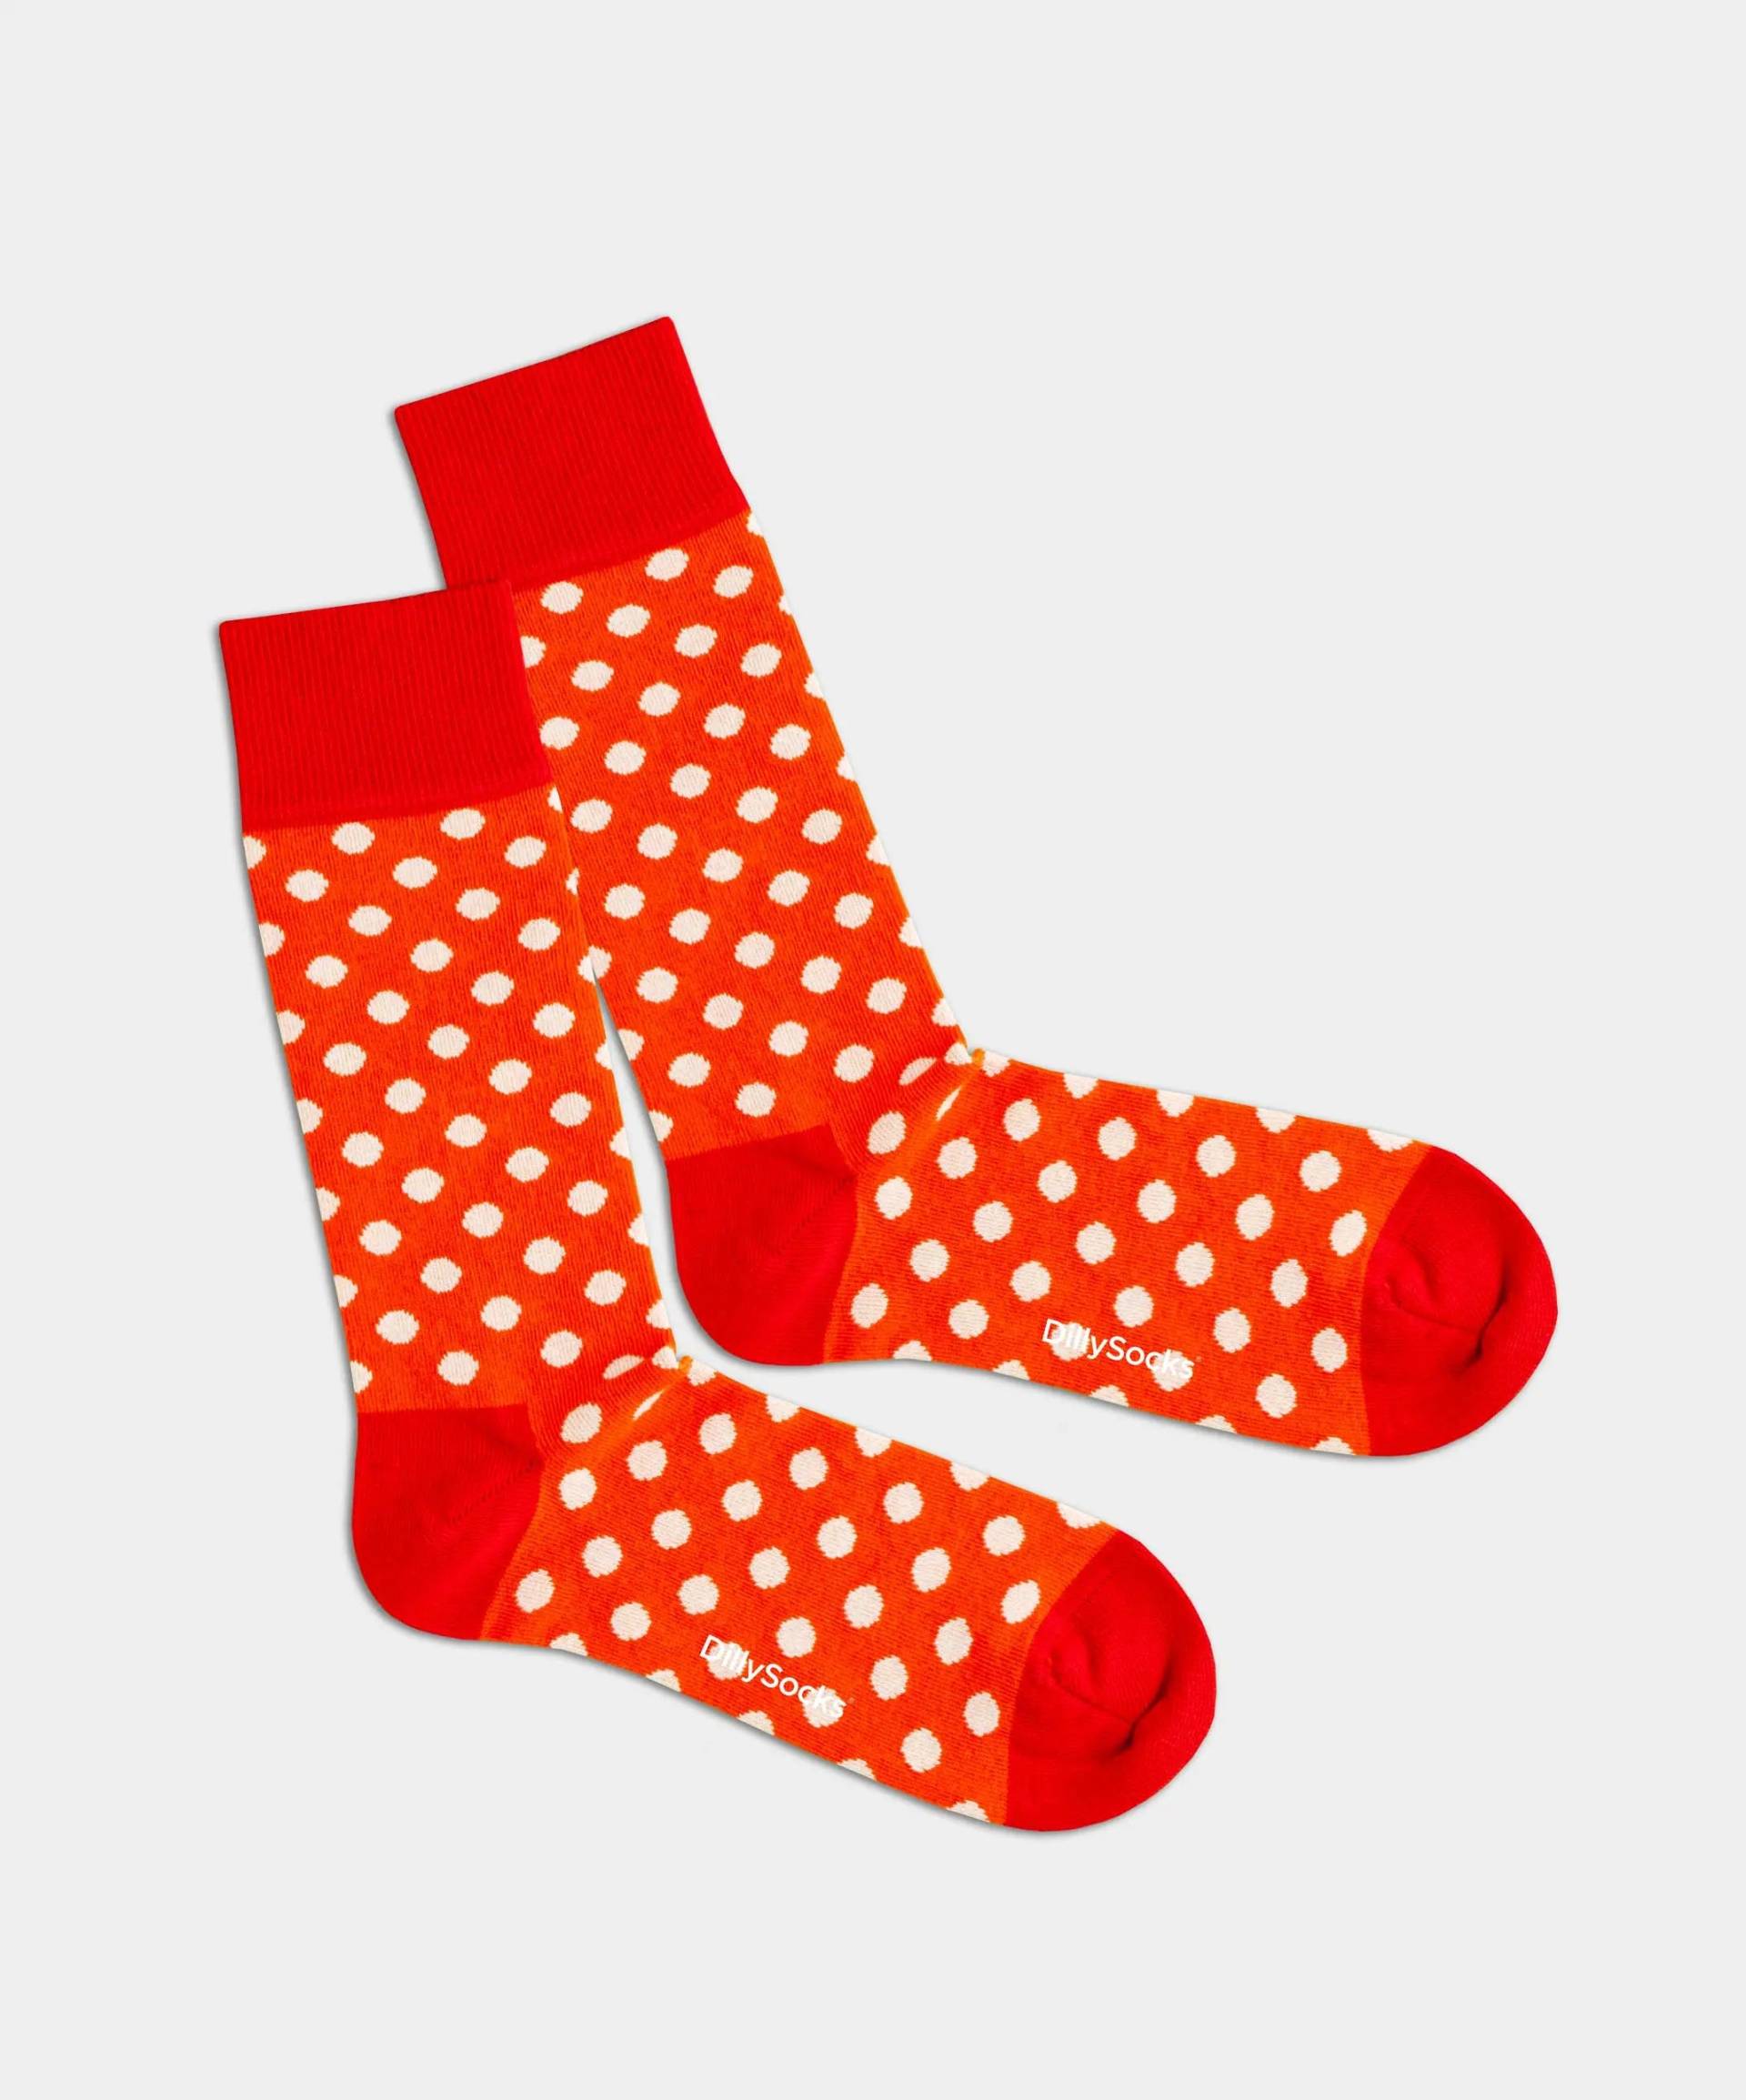 - Socken in Rot mit Punkte Motiv/Muster von DillySocks